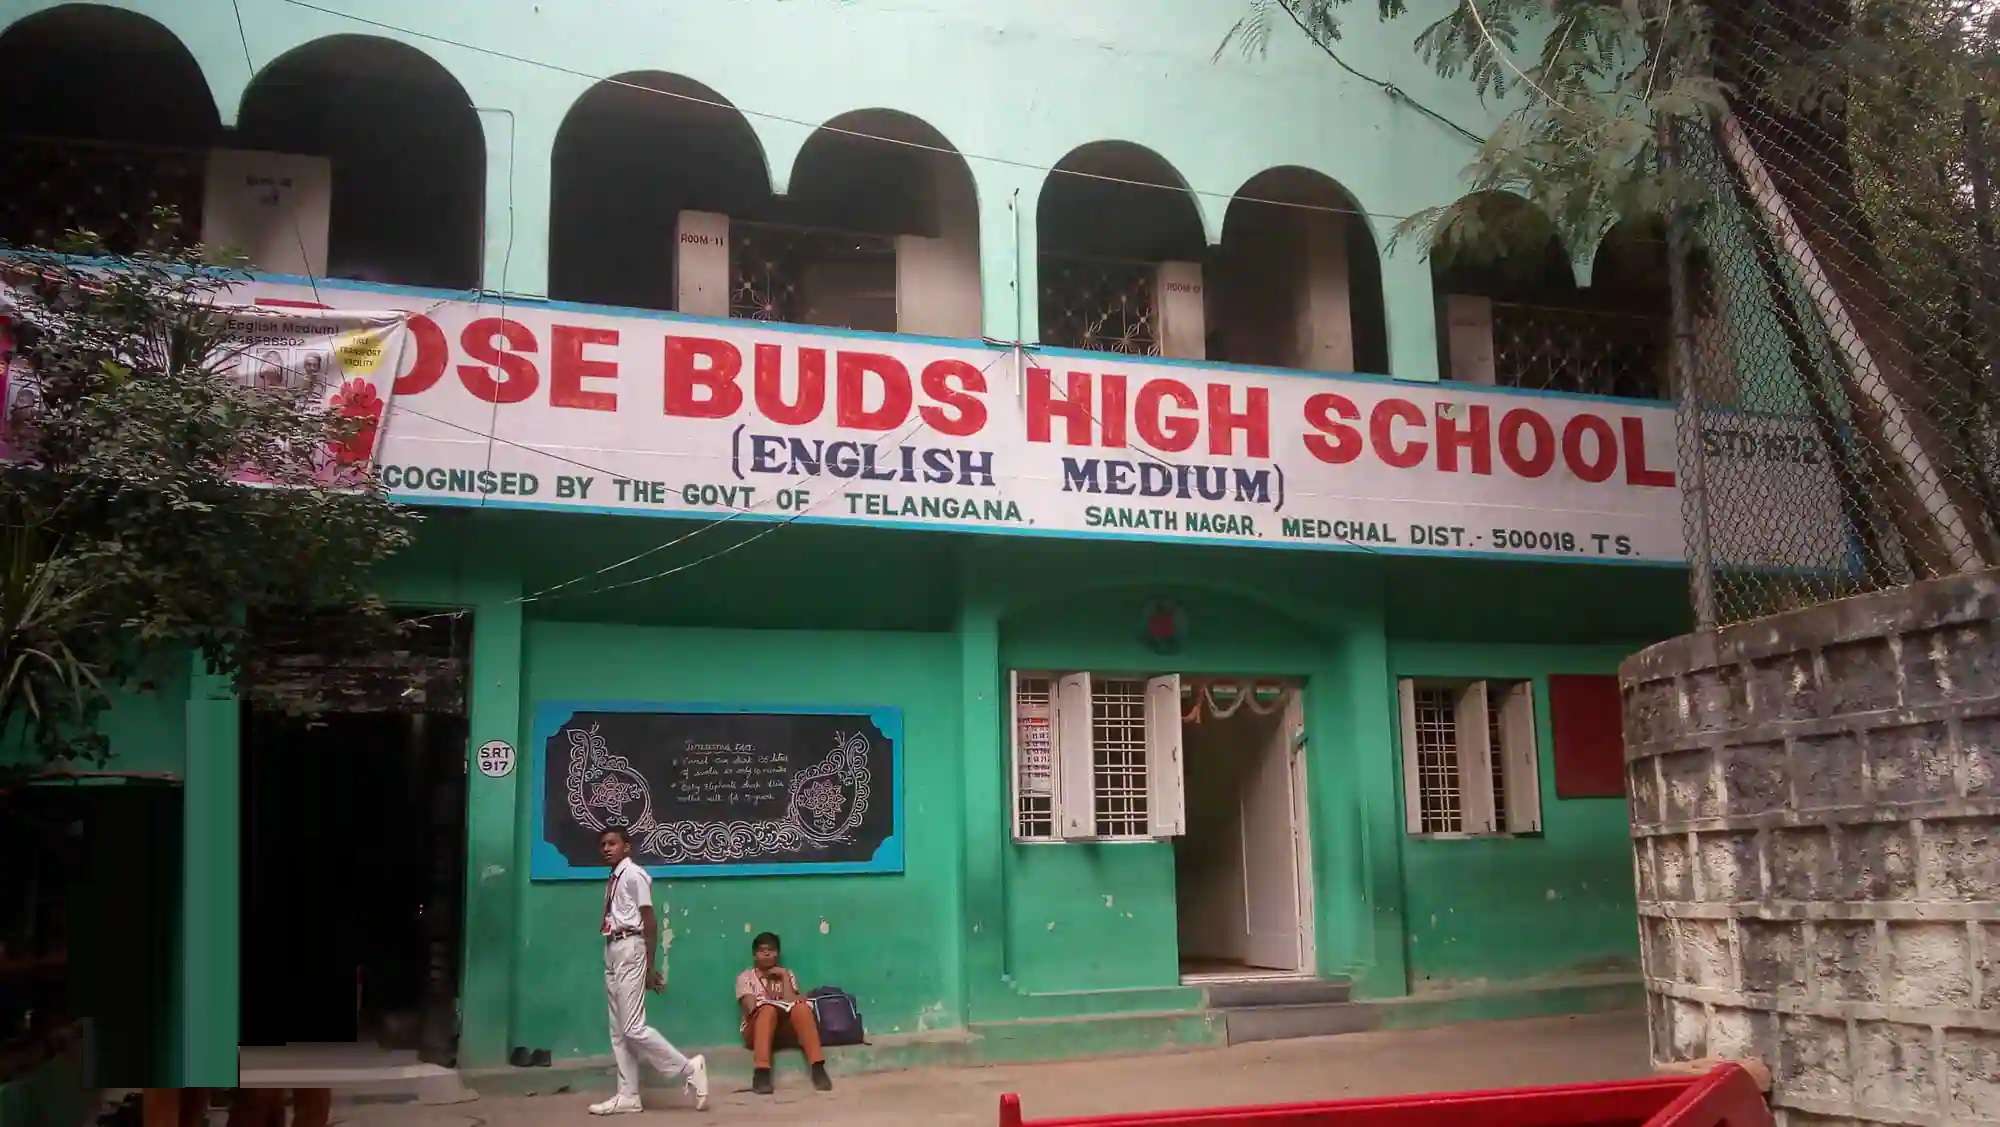 Rose Buds High School,  Shivaji Nagar